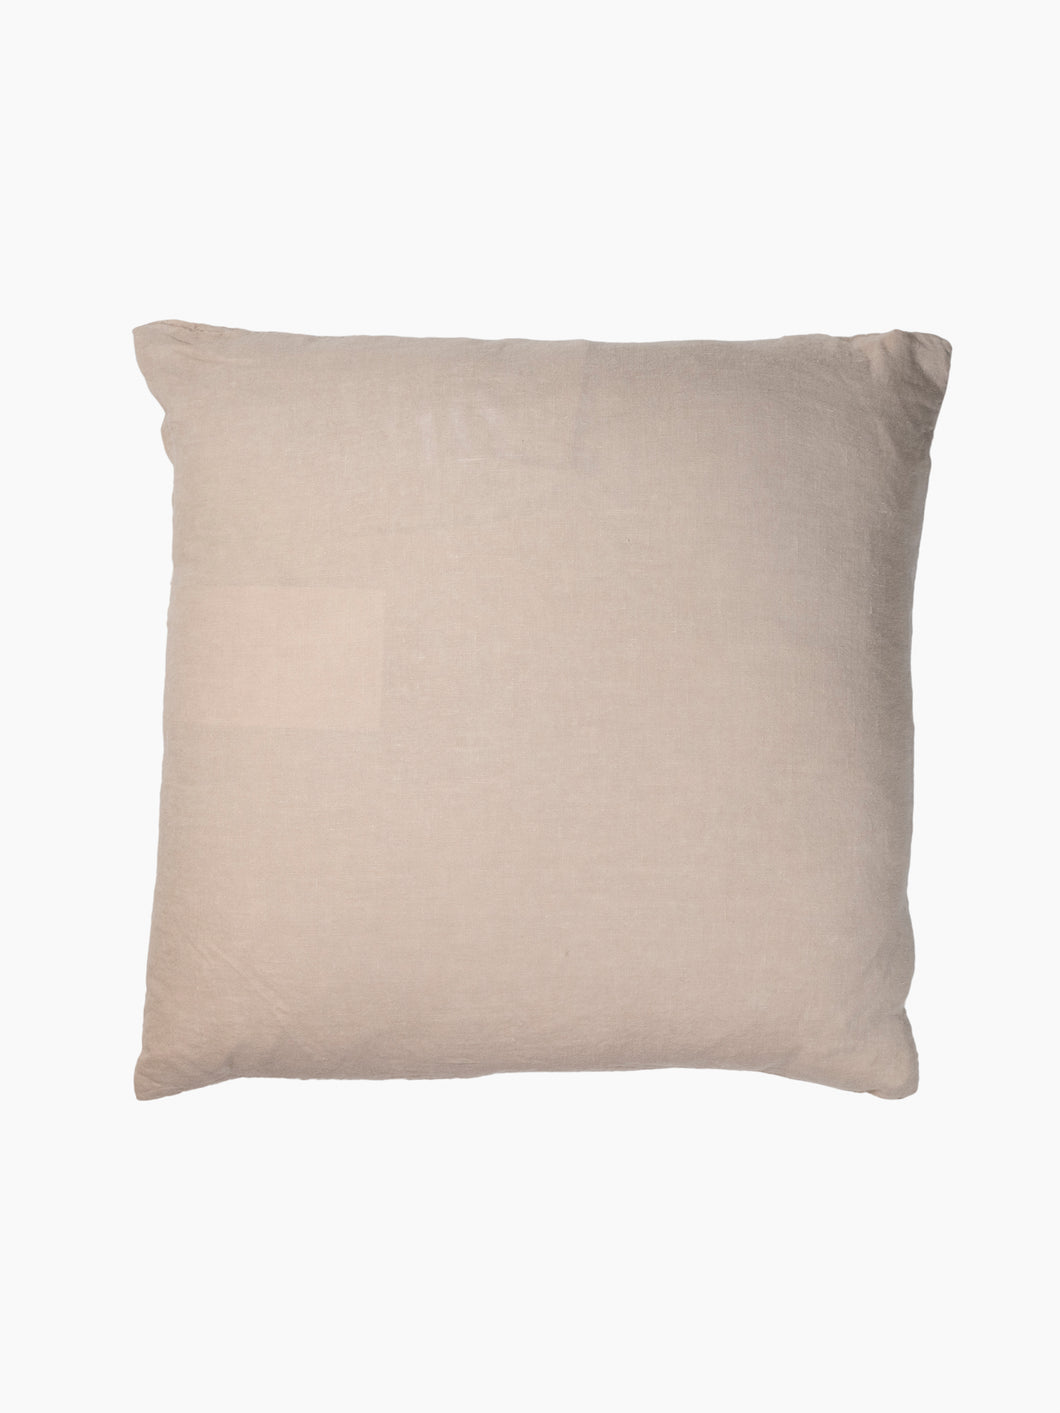 Flax Linen Throw Pillows